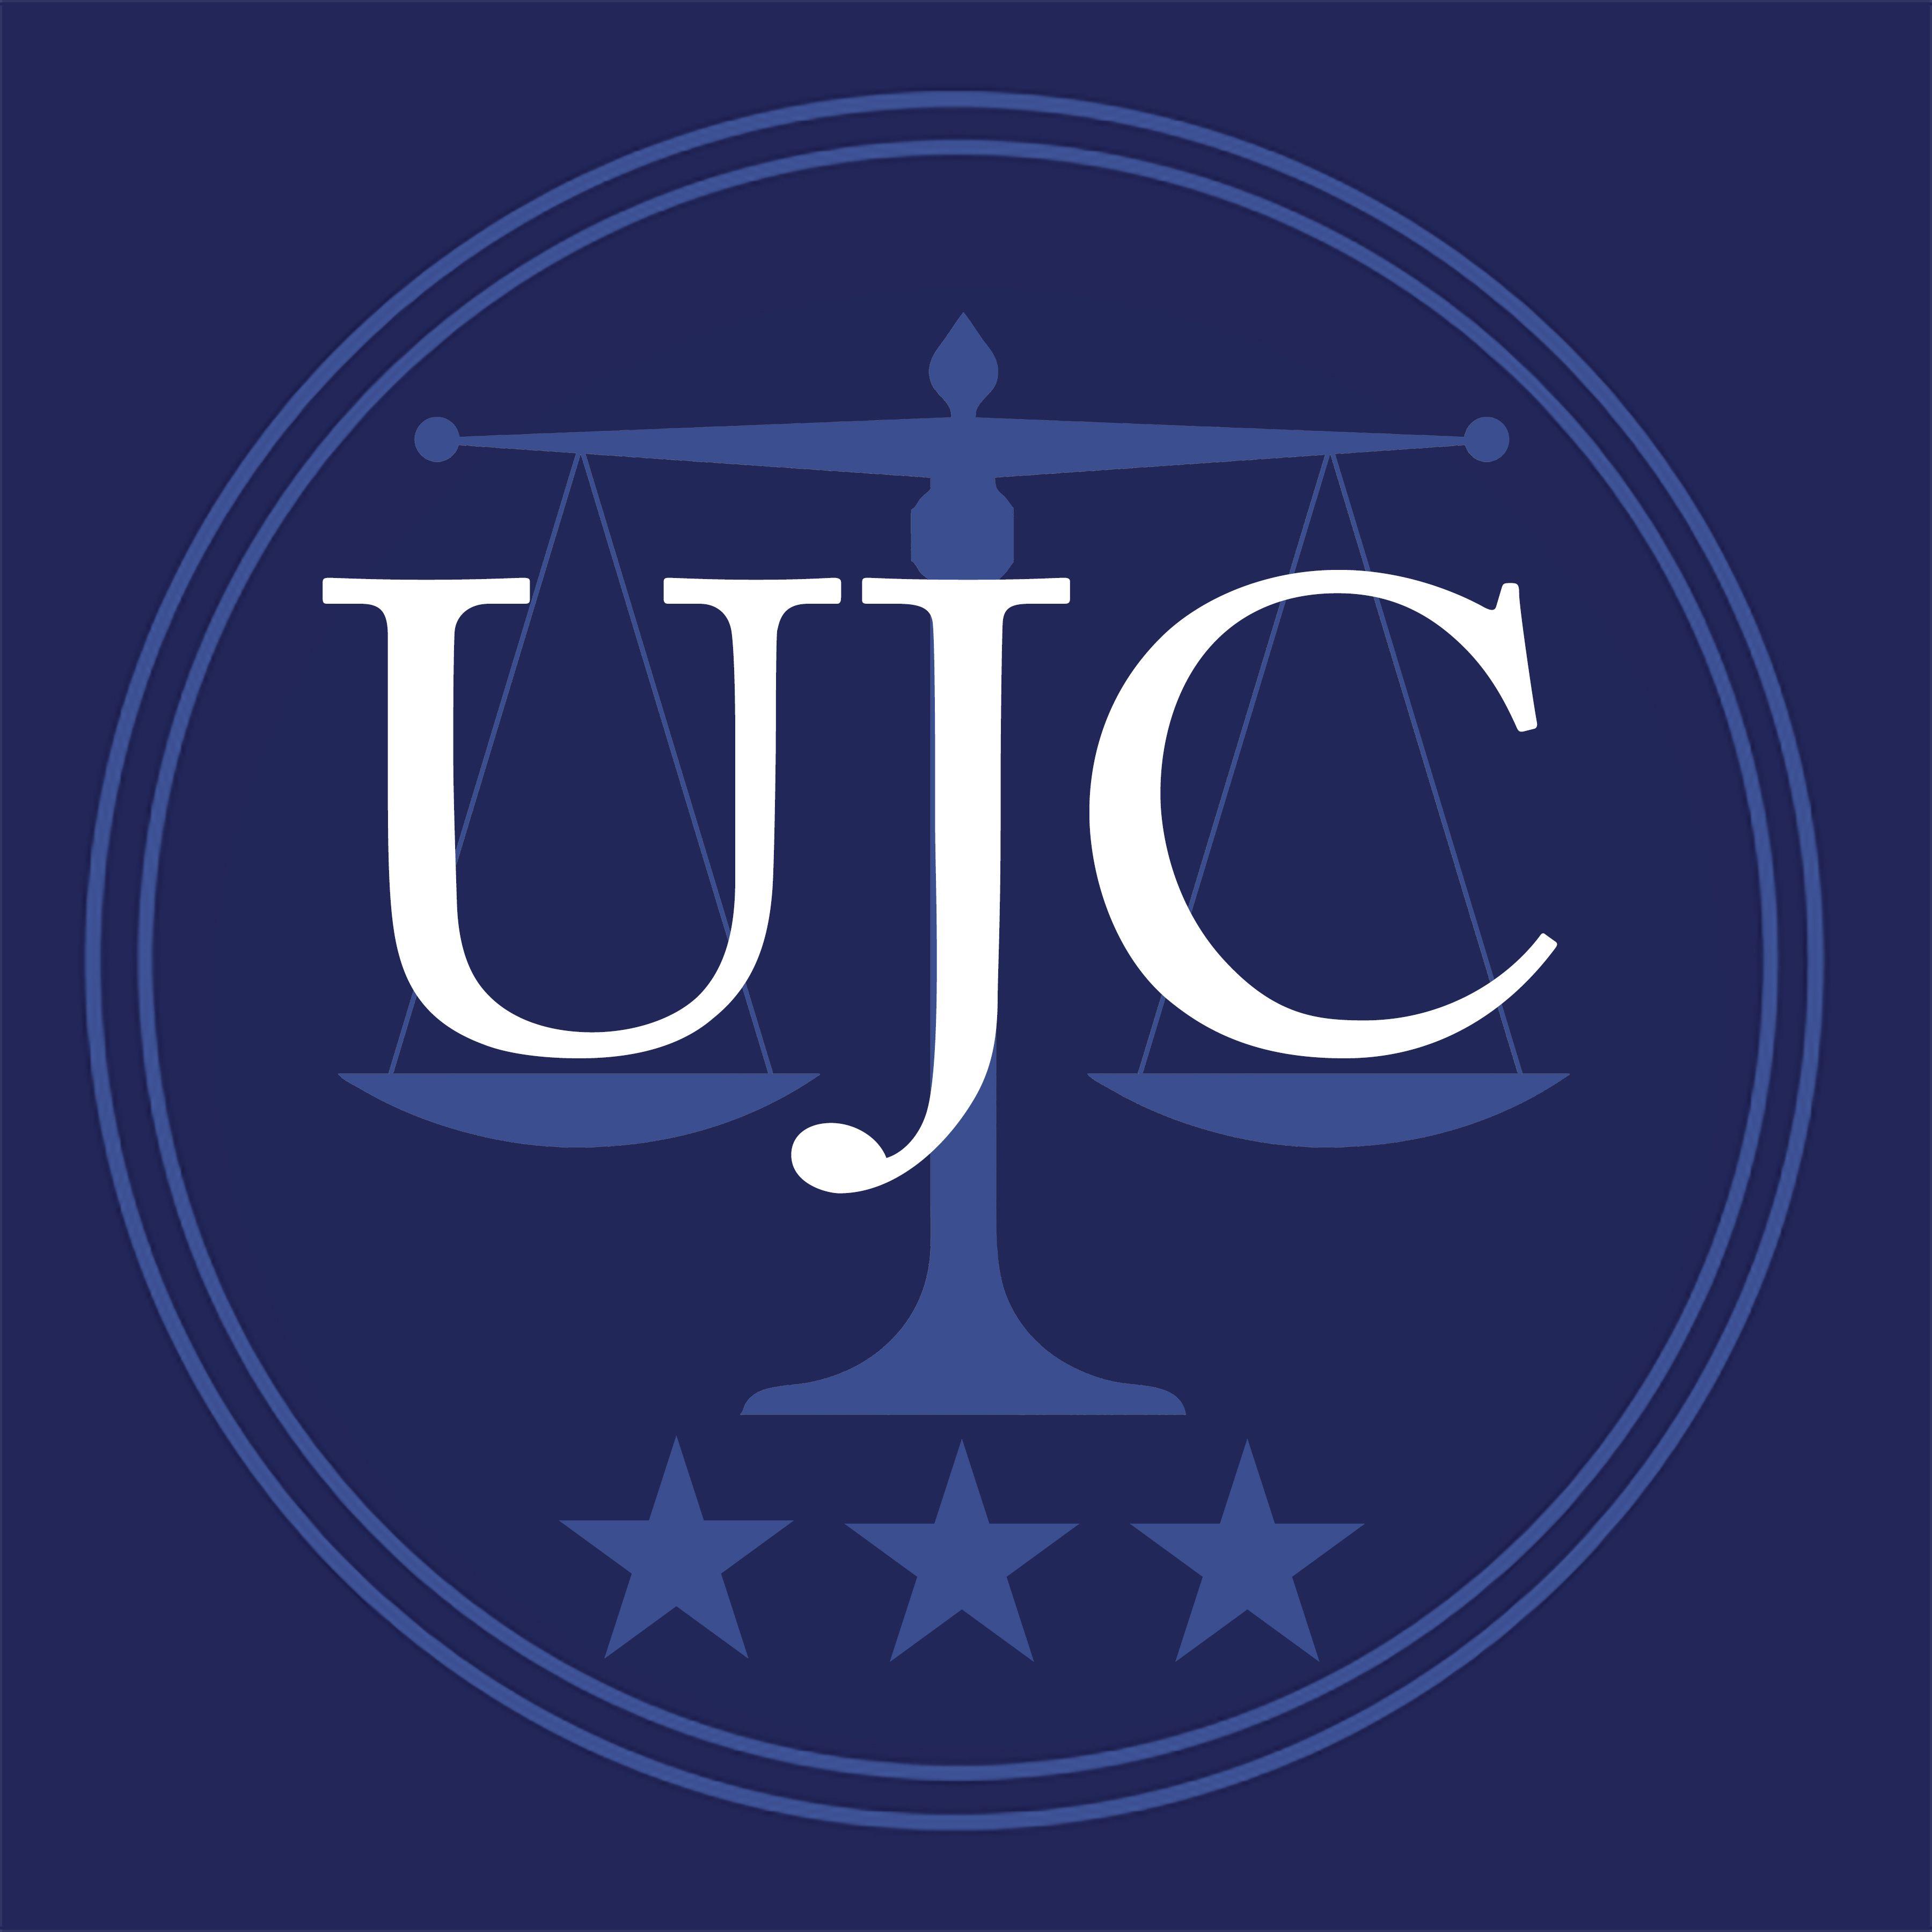 Judiciary Logo - University Judiciary Committee - University of Virginia